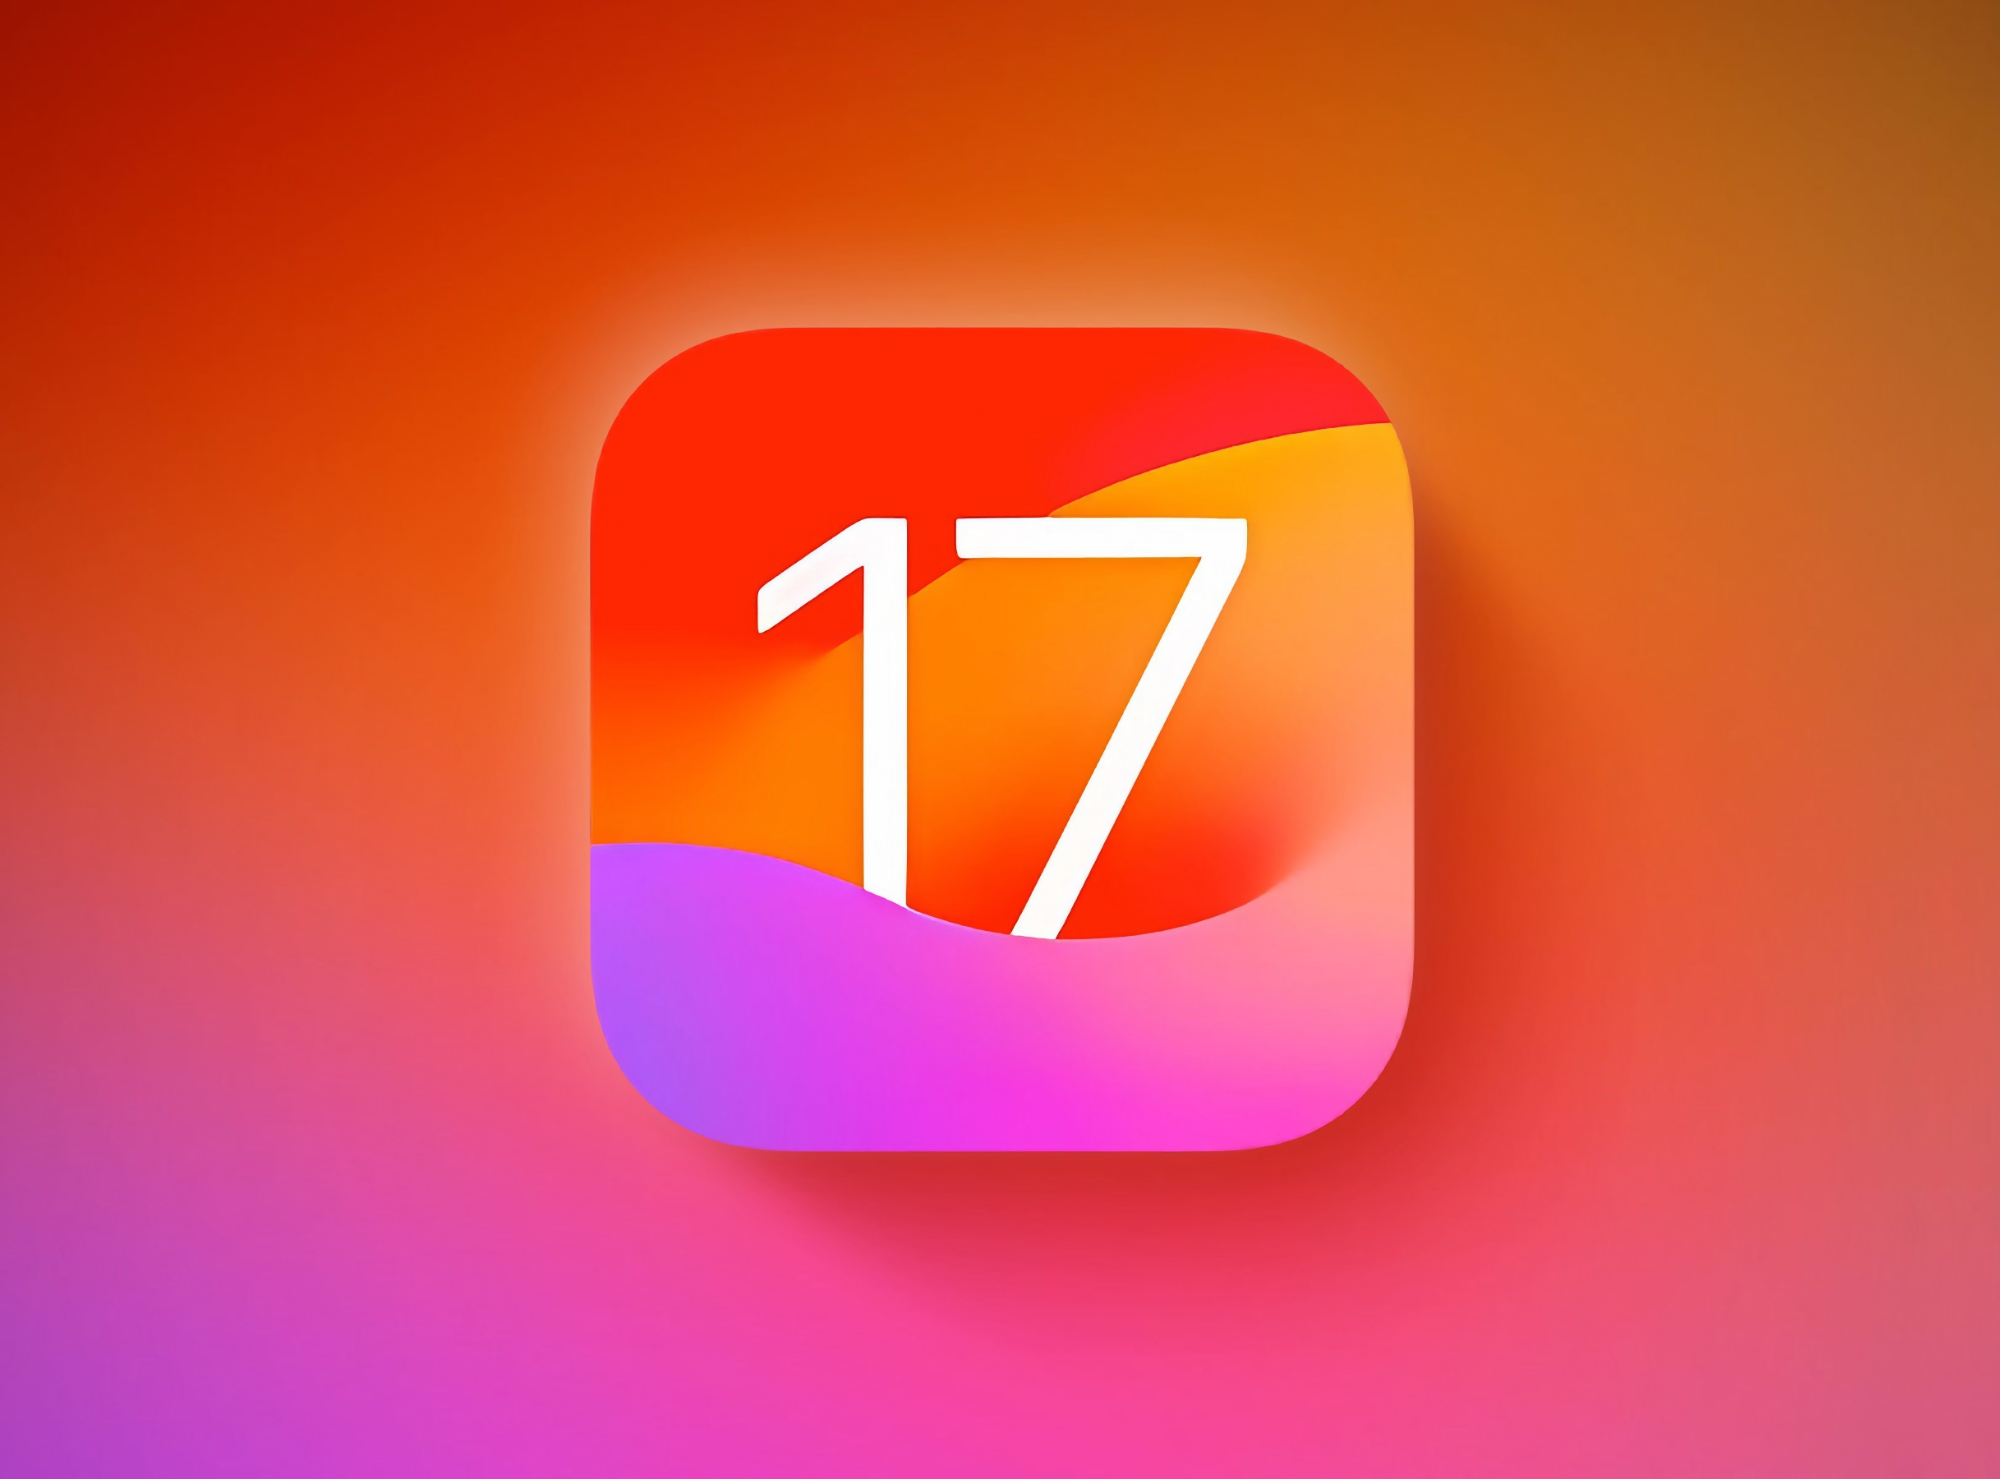 Apple випустила iOS 17.0.1 та iOS 17.0.2 для користувачів iPhone